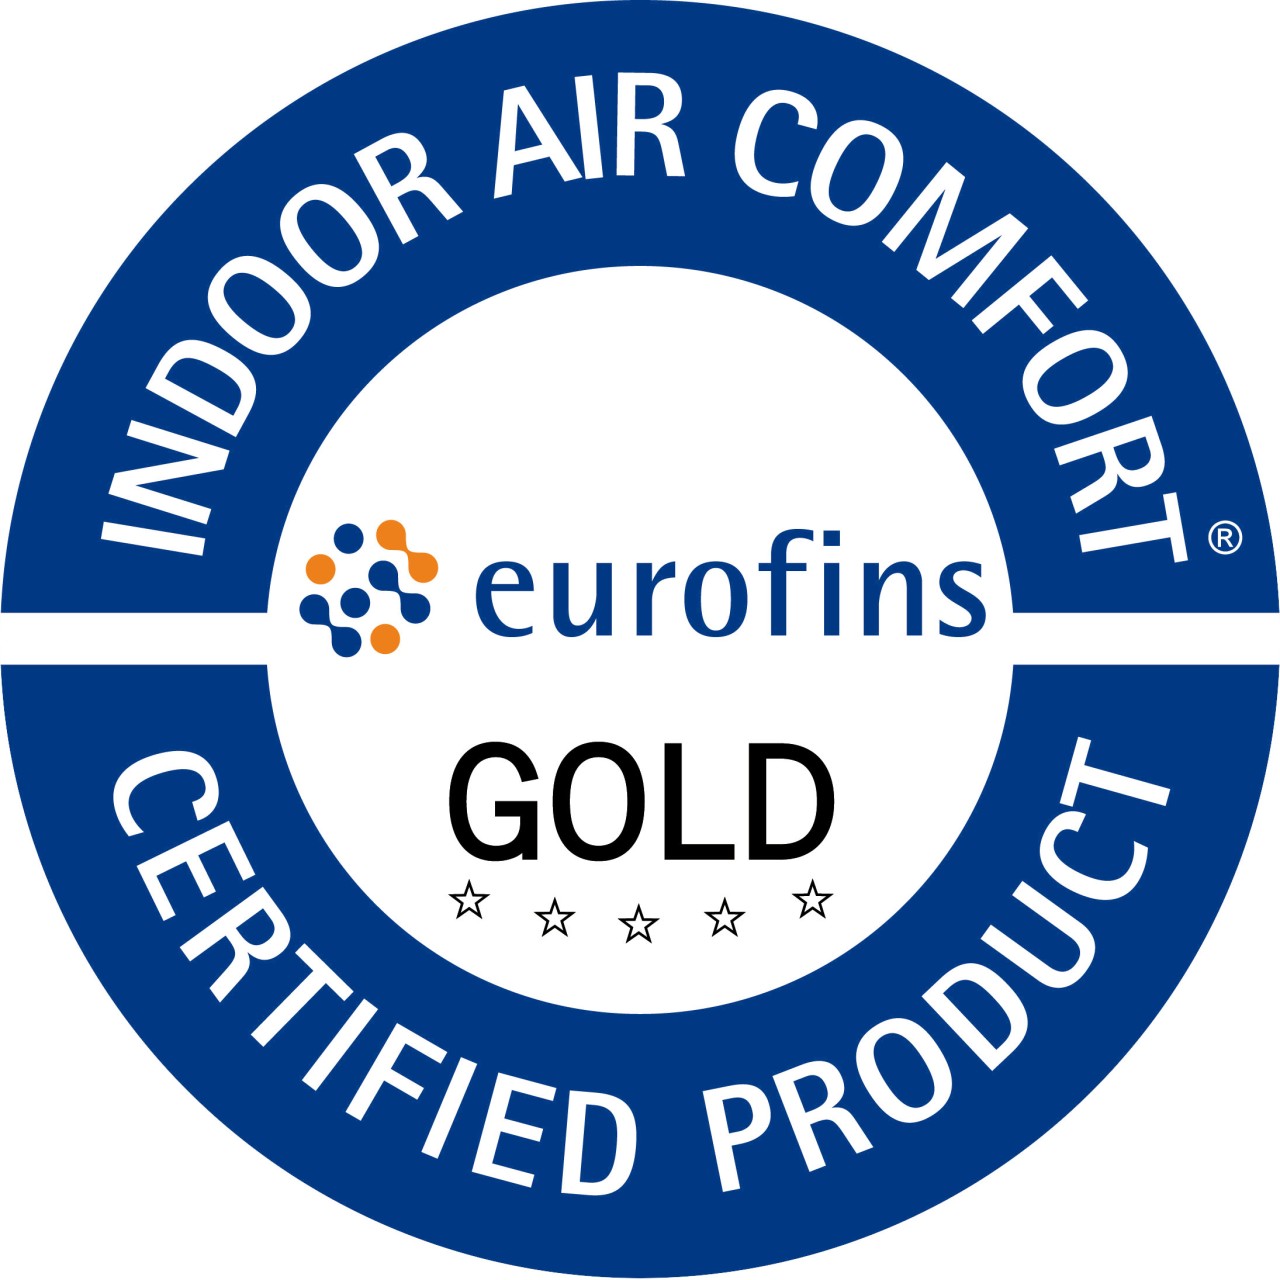 Ambienti salubri e sicuri con FILA Solutions, che ottiene la certificazione Indoor Air Comfort Gold